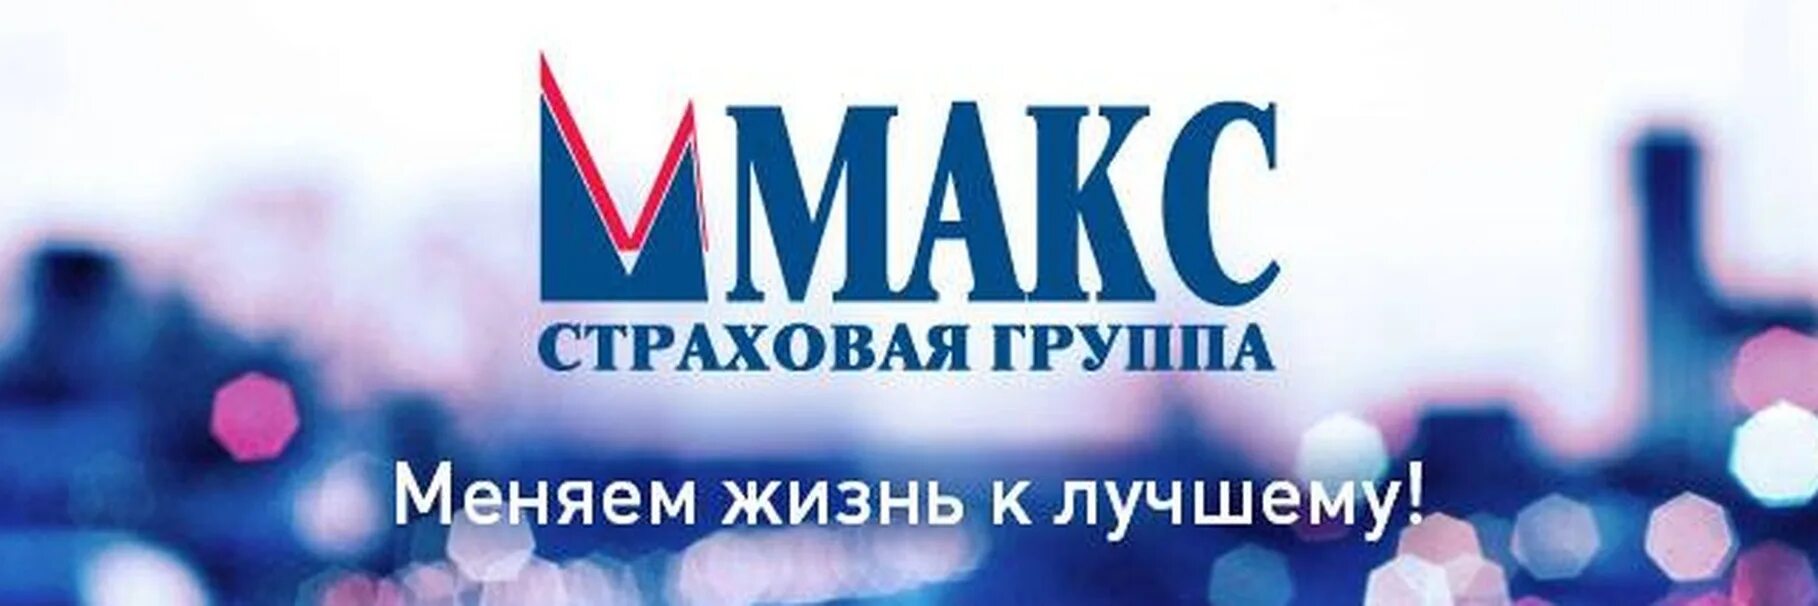 Горячий телефон страховой компании макс. Макс страховая компания логотип. АО Московская акционерная страховая компания Макс. Макс страховая компания Оренбург. Страховая компания Макс Кострома.